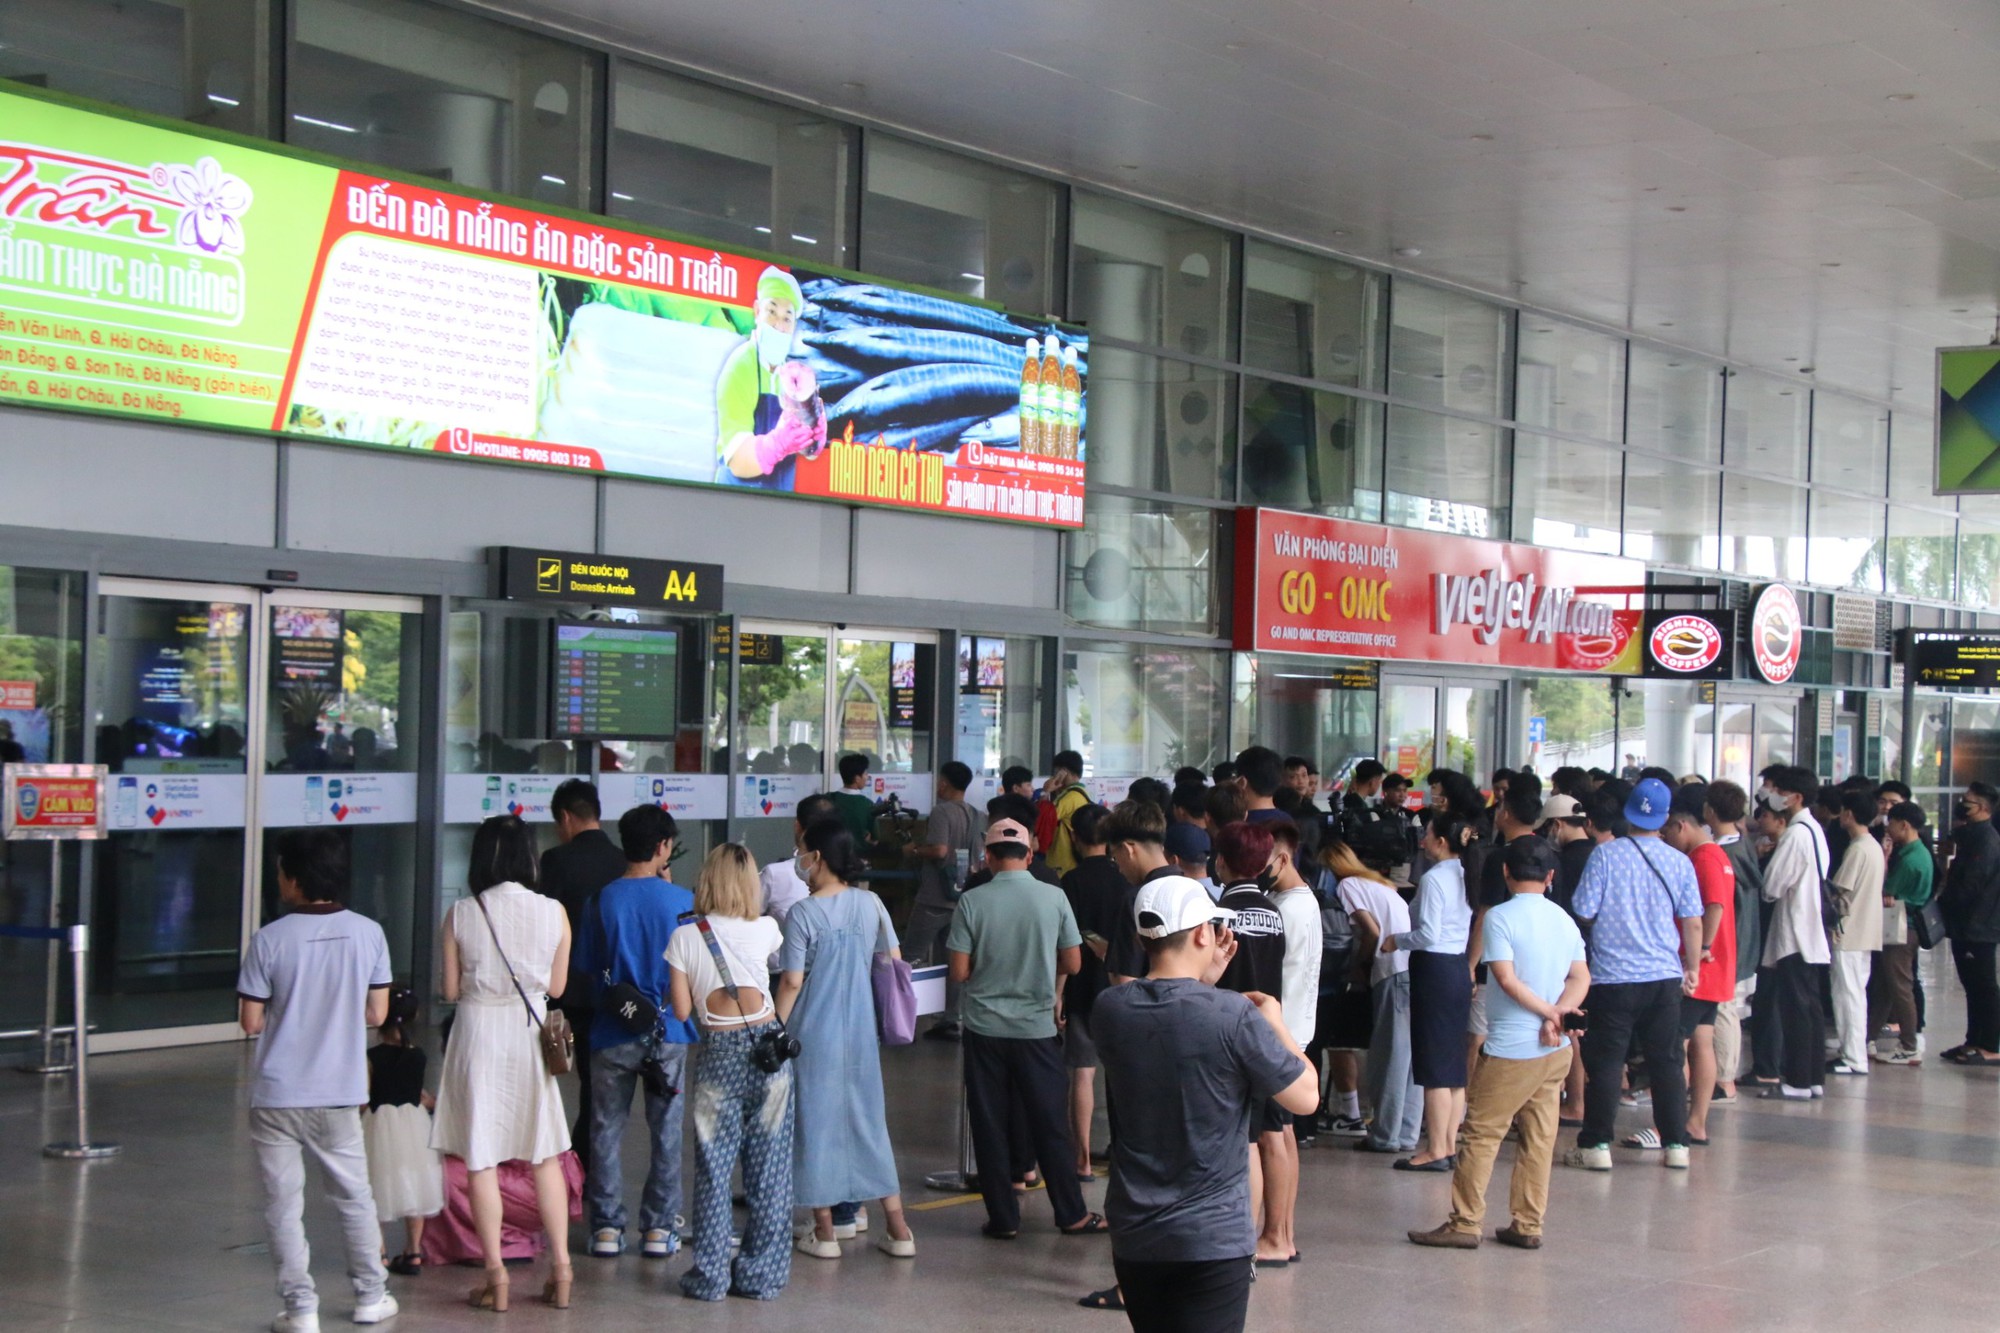 Khung cảnh lạ ở sân bay Tân Sơn Nhất trong ngày đầu nghỉ lễ 30-4, 1-5- Ảnh 15.